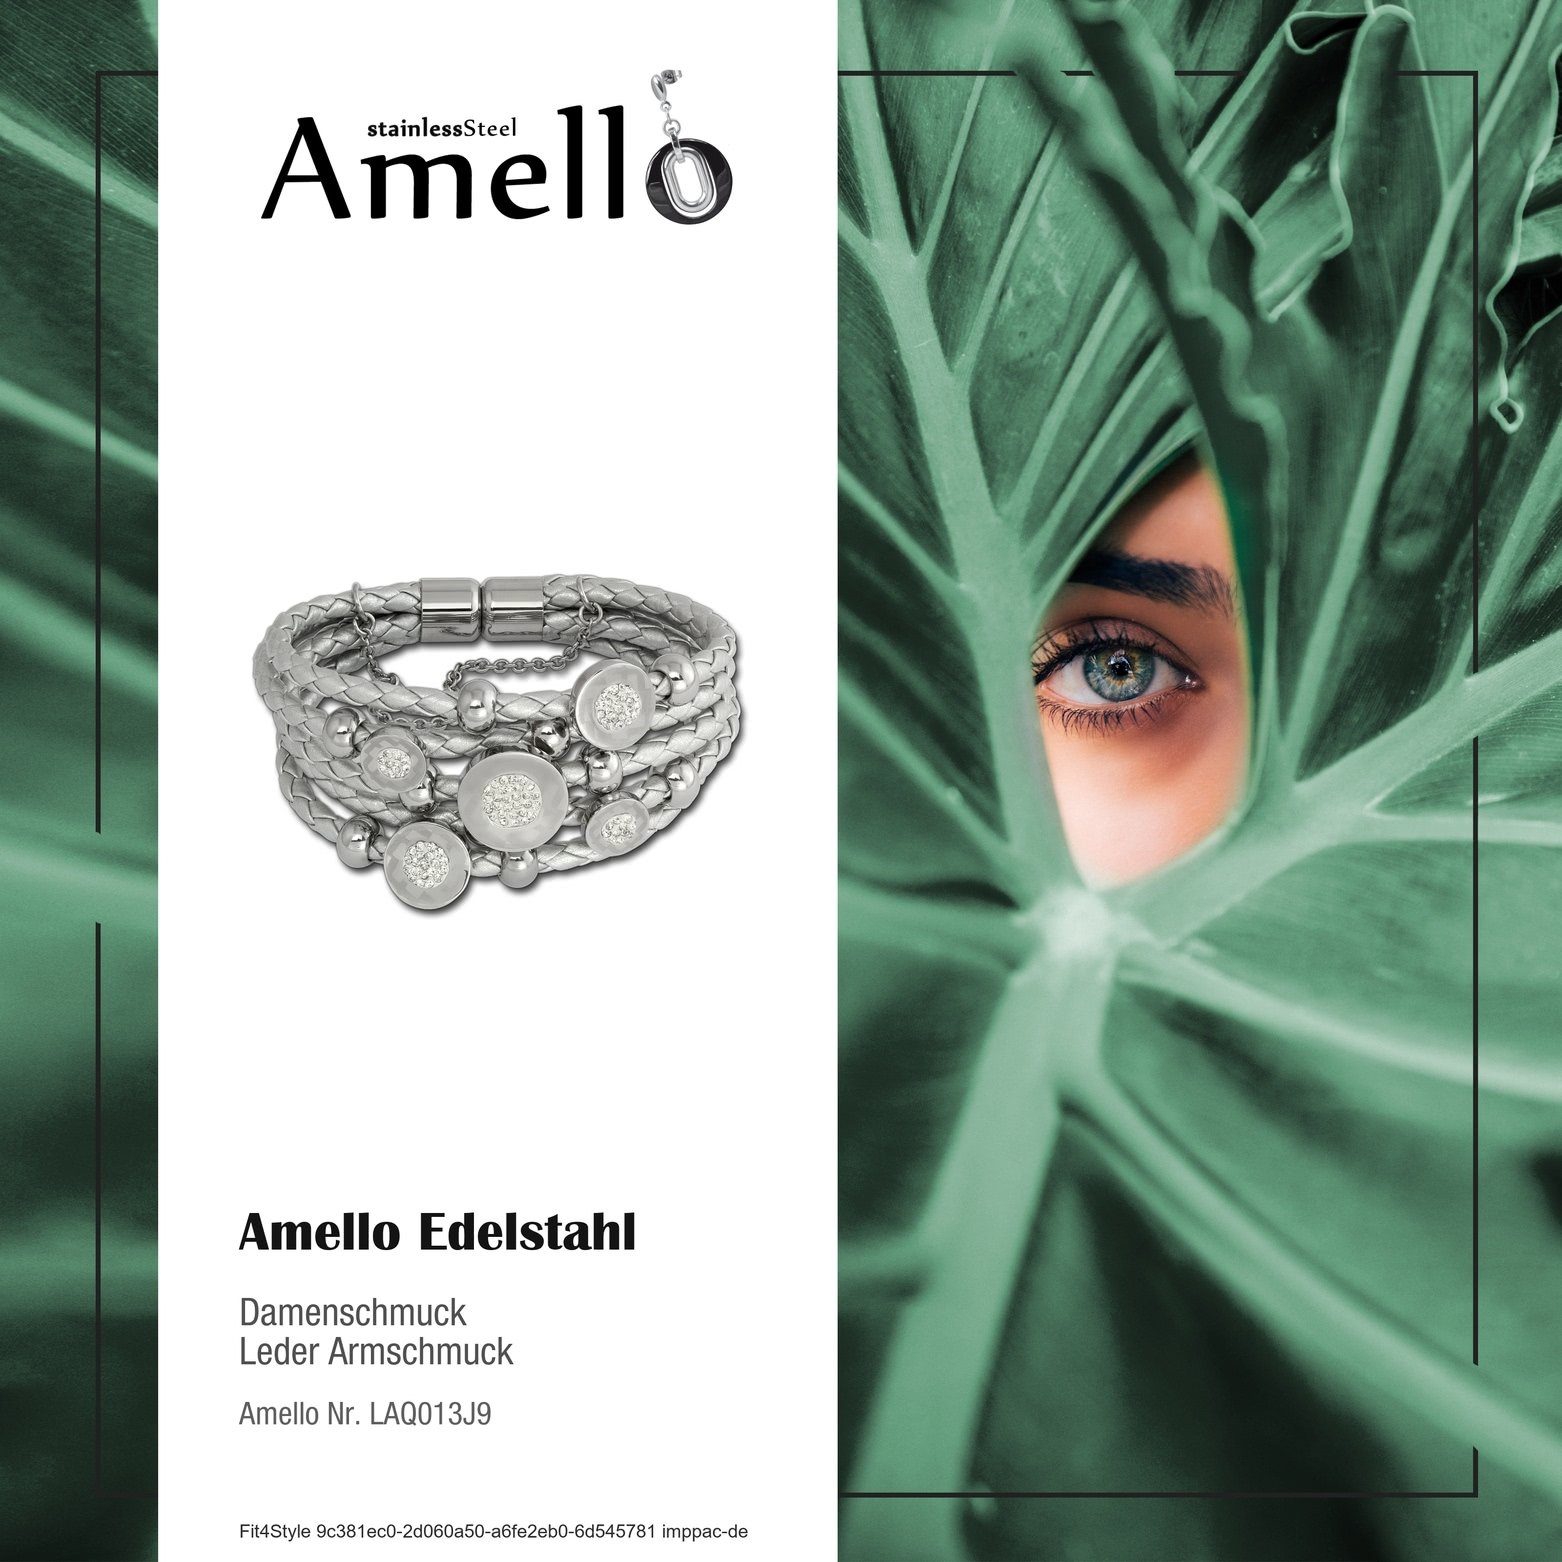 Amello Edelstahlarmband Amello Zirkonia Farbe: (Stainless Edelstahl Steel), Armband Damen silber Kreise gra (Armband), silber, Armband (Kreise)